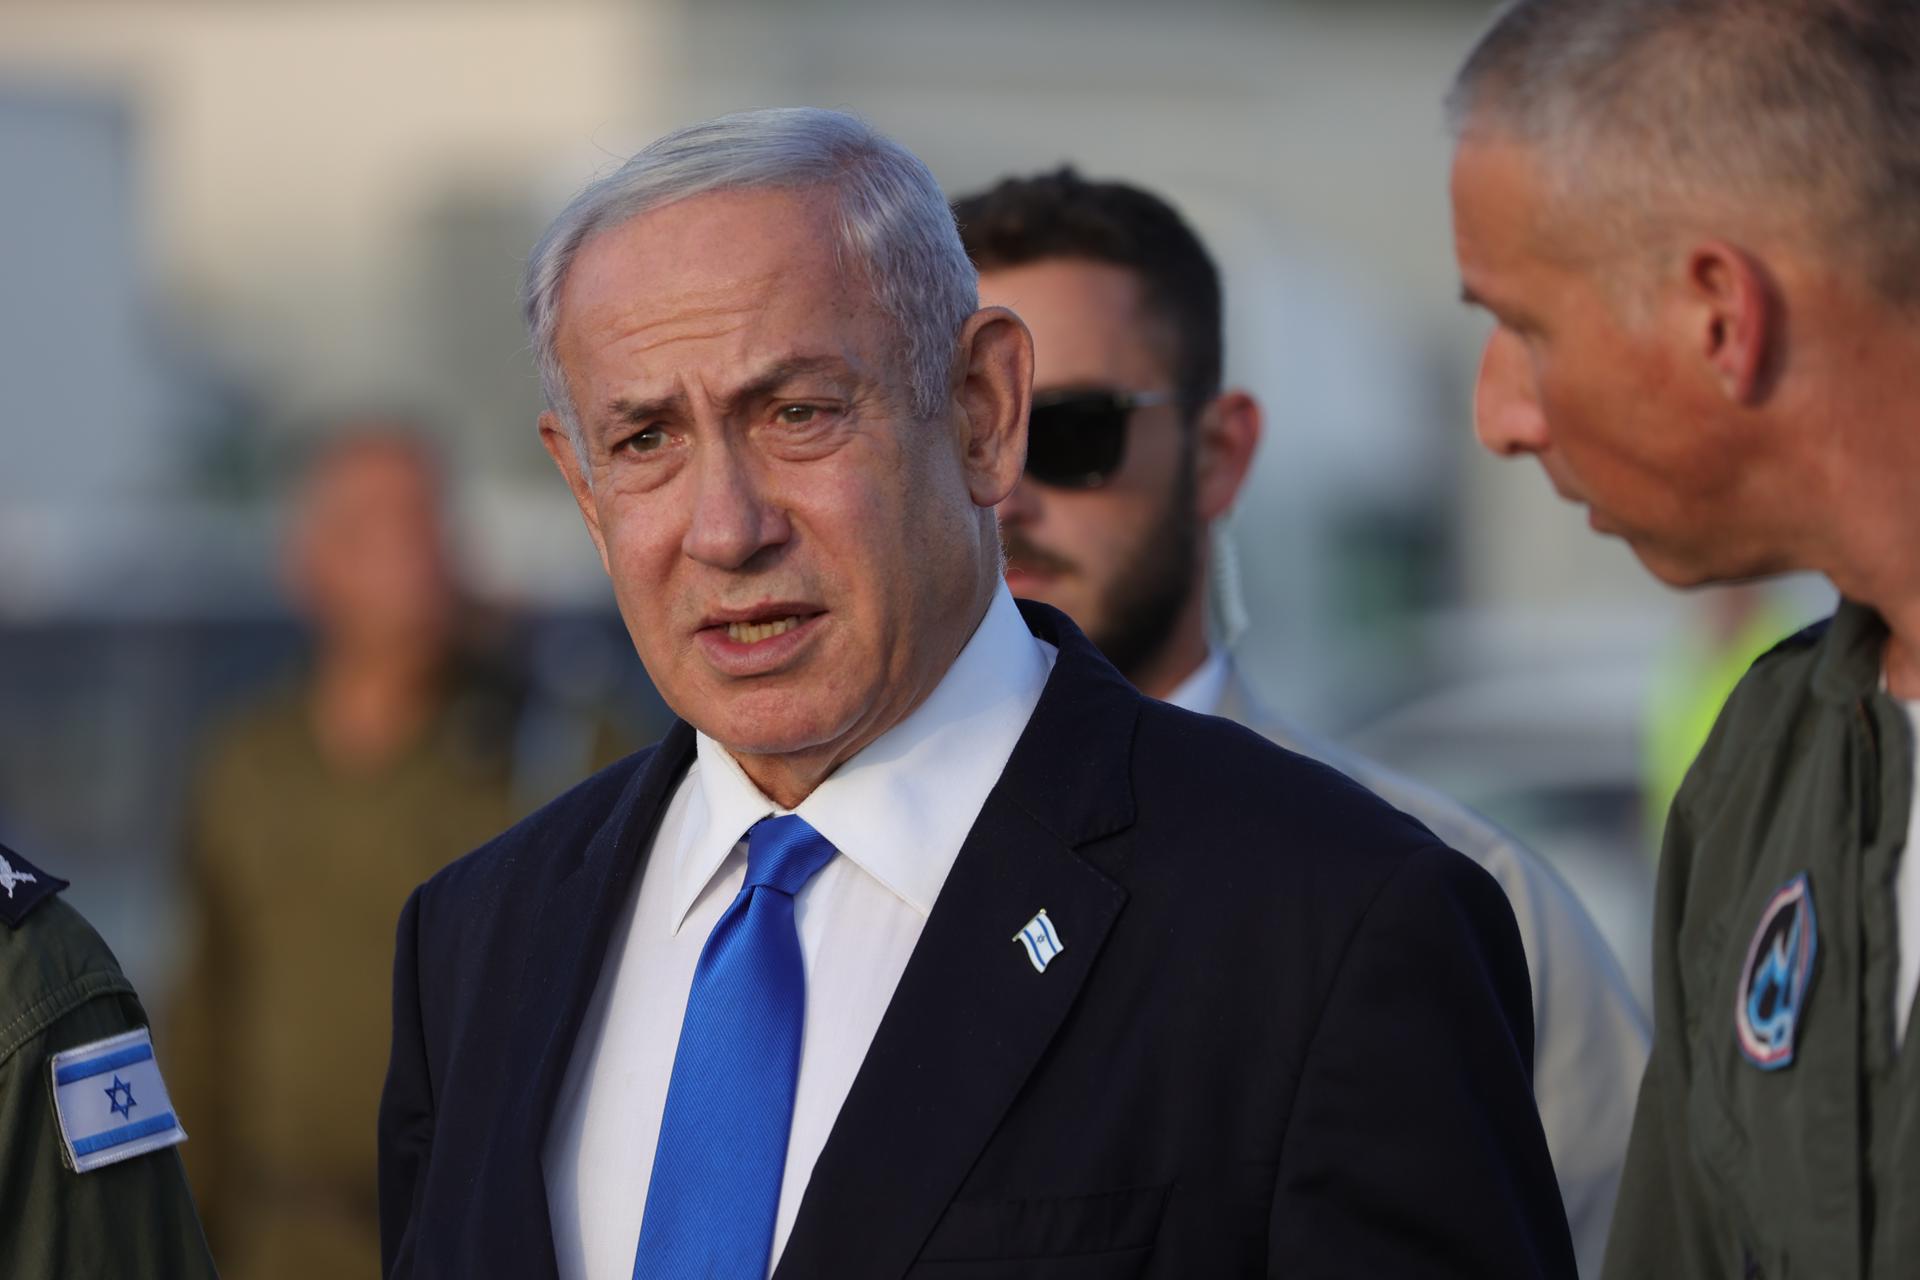 El primer ministro Netanyahu fue hospitalizado por deshidratación pero se encuentra bien